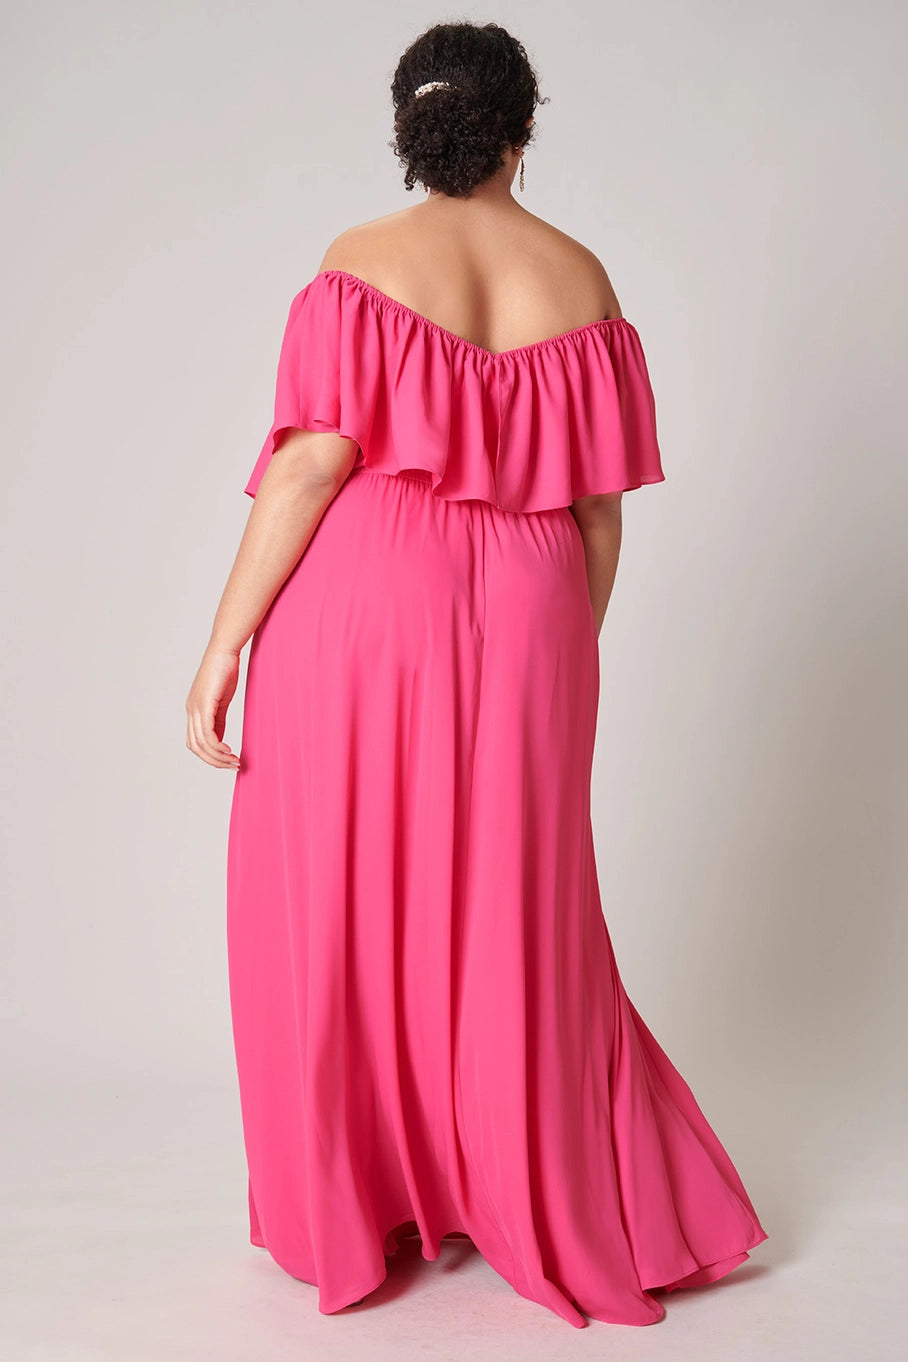 Ruffle Pink Dress